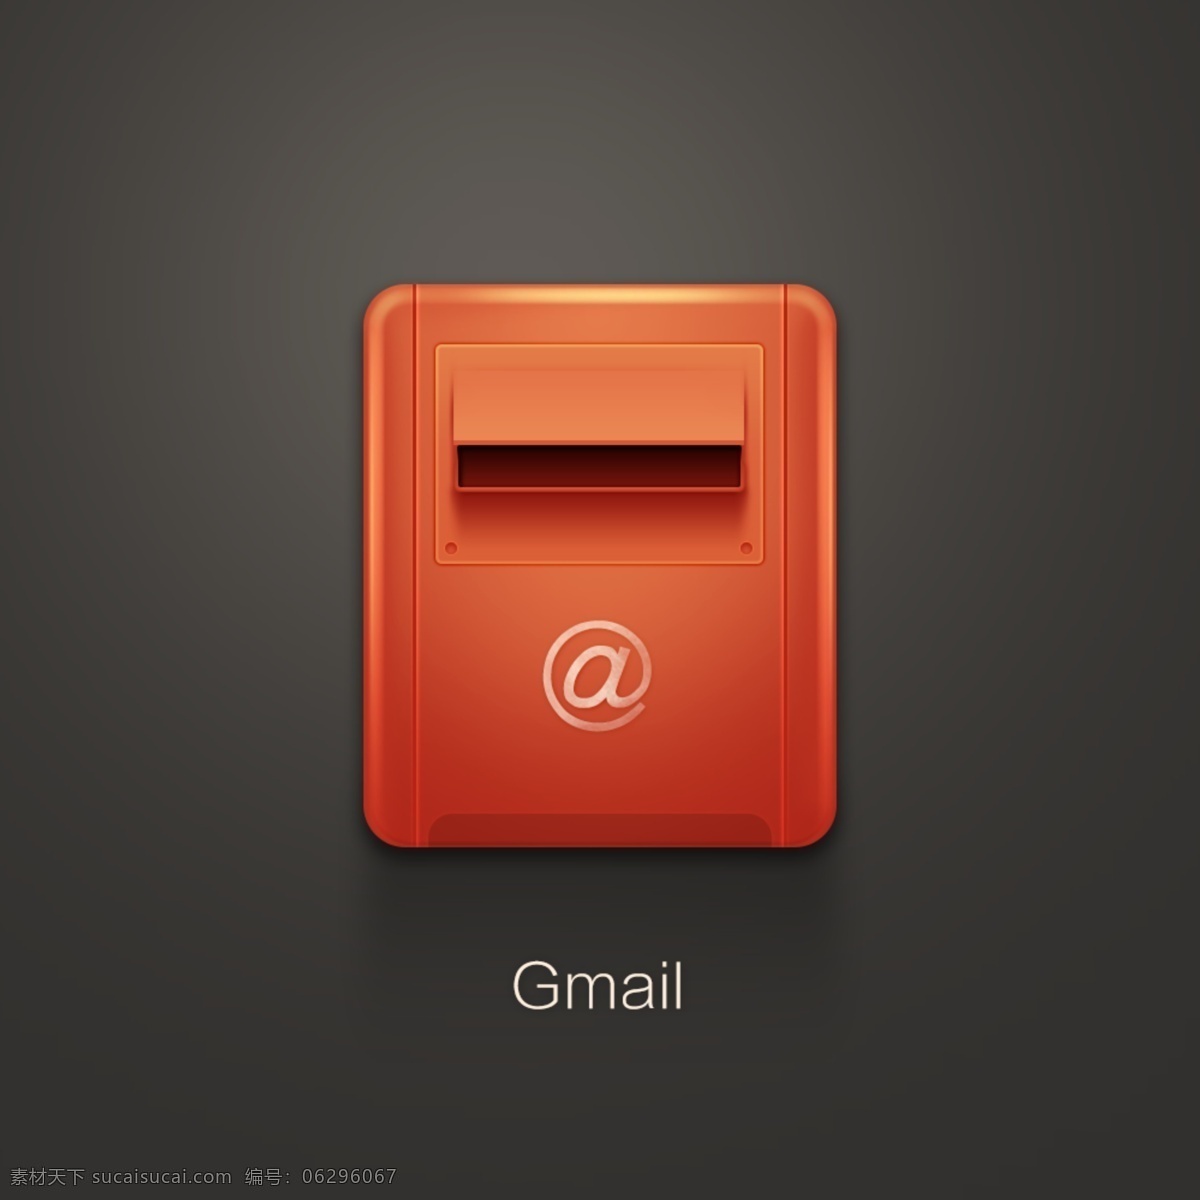 gmail 图标 红色 邮件 邮箱 手机 app app图标